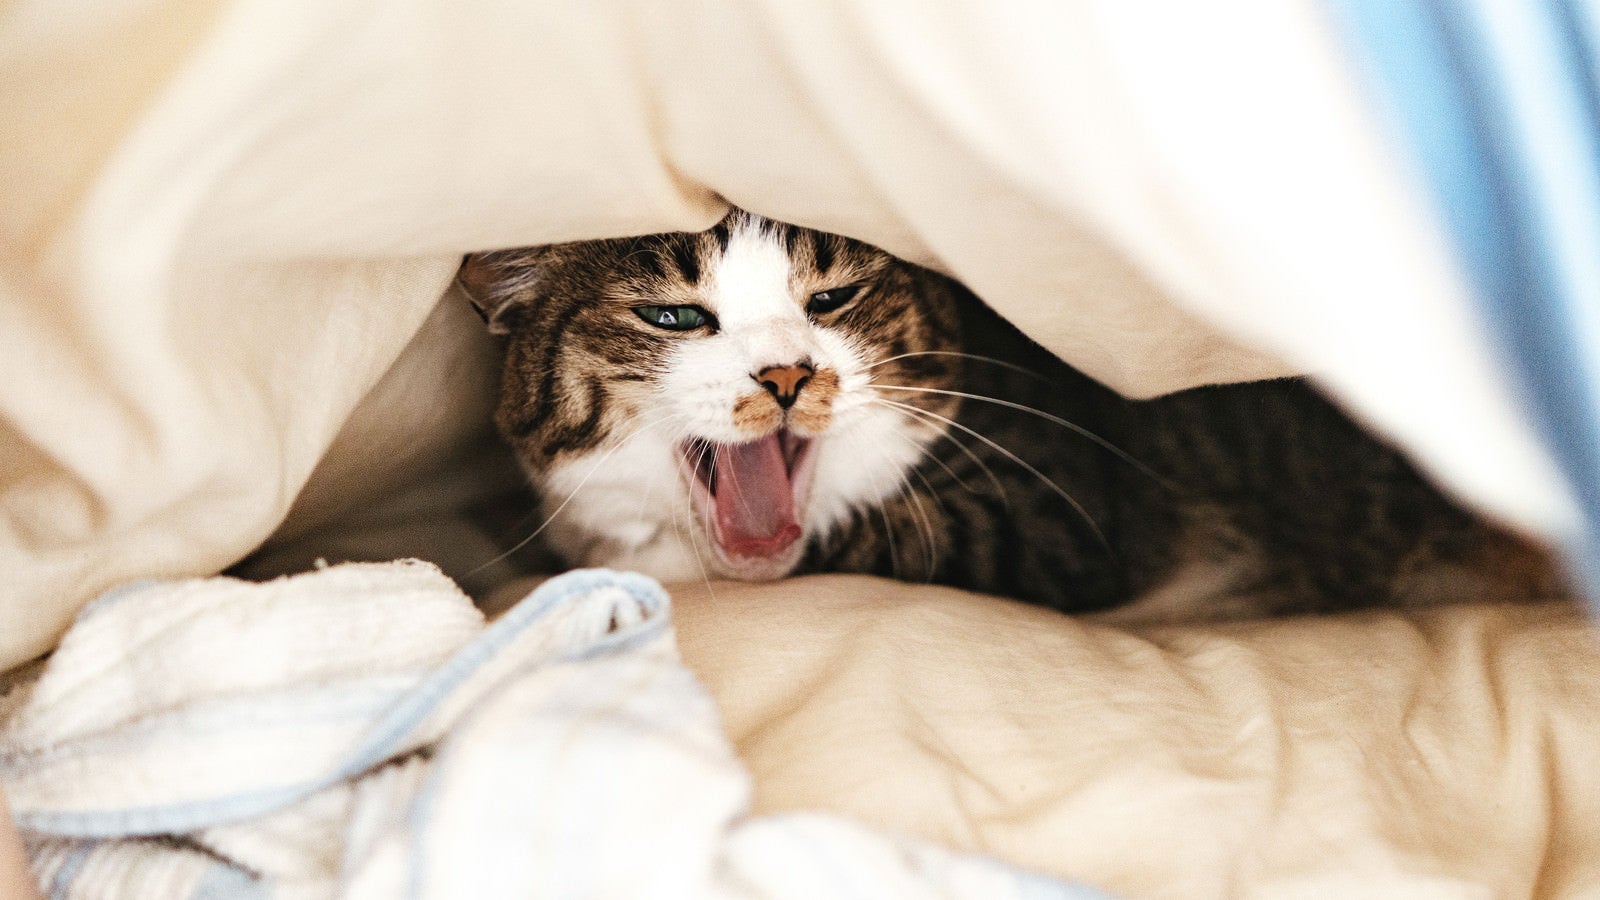 「お布団の中であくびする寝起き猫」の写真